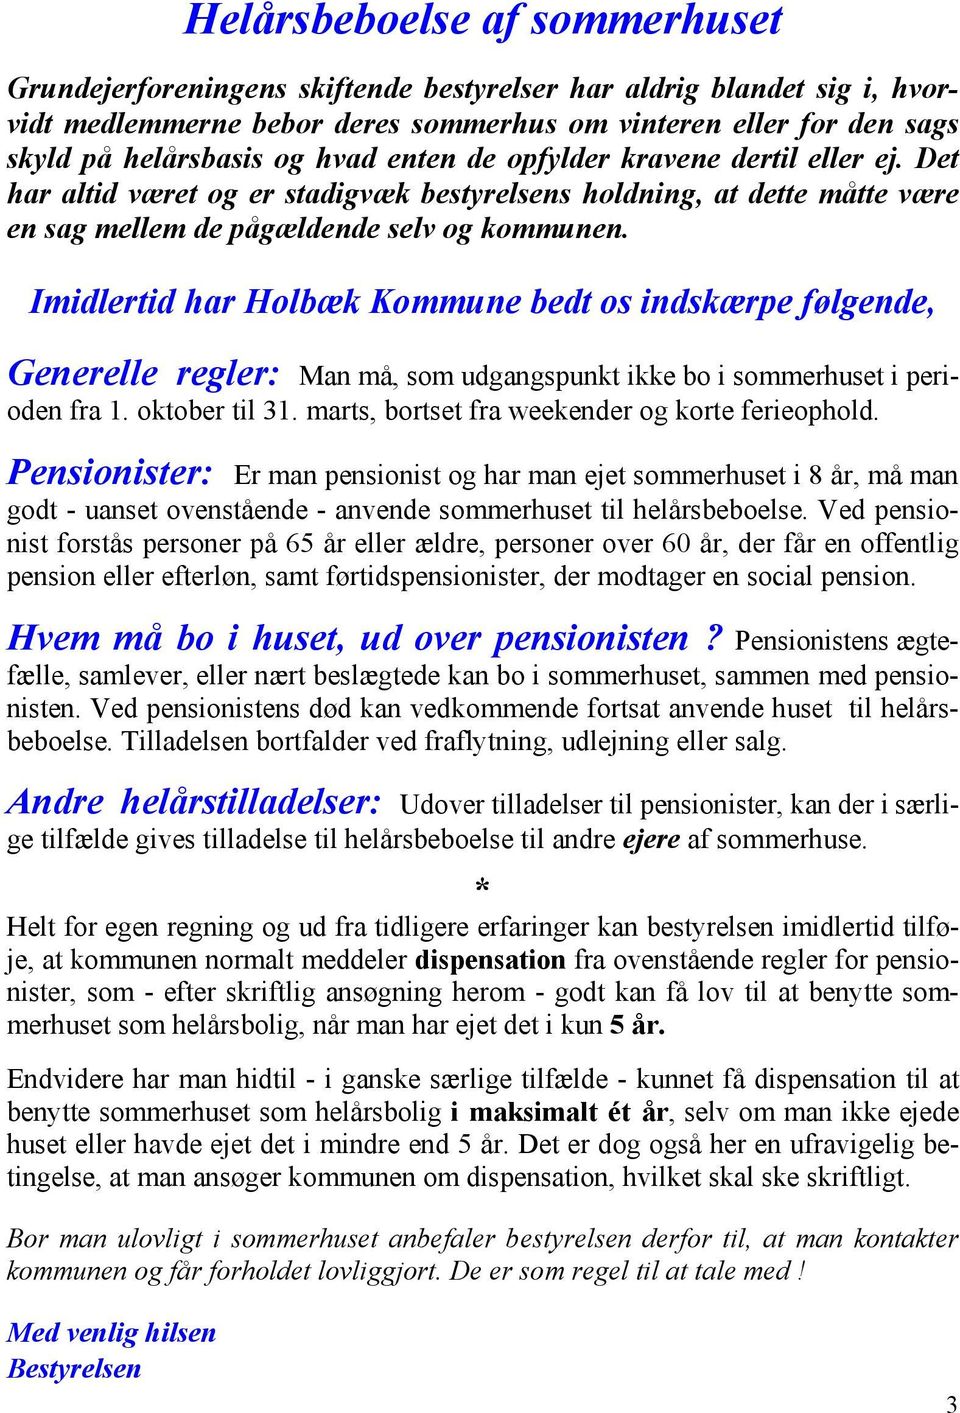 Imidlertid har Holbæk Kommune bedt os indskærpe følgende, Generelle regler: Man må, som udgangspunkt ikke bo i sommerhuset i perioden fra 1. oktober til 31.